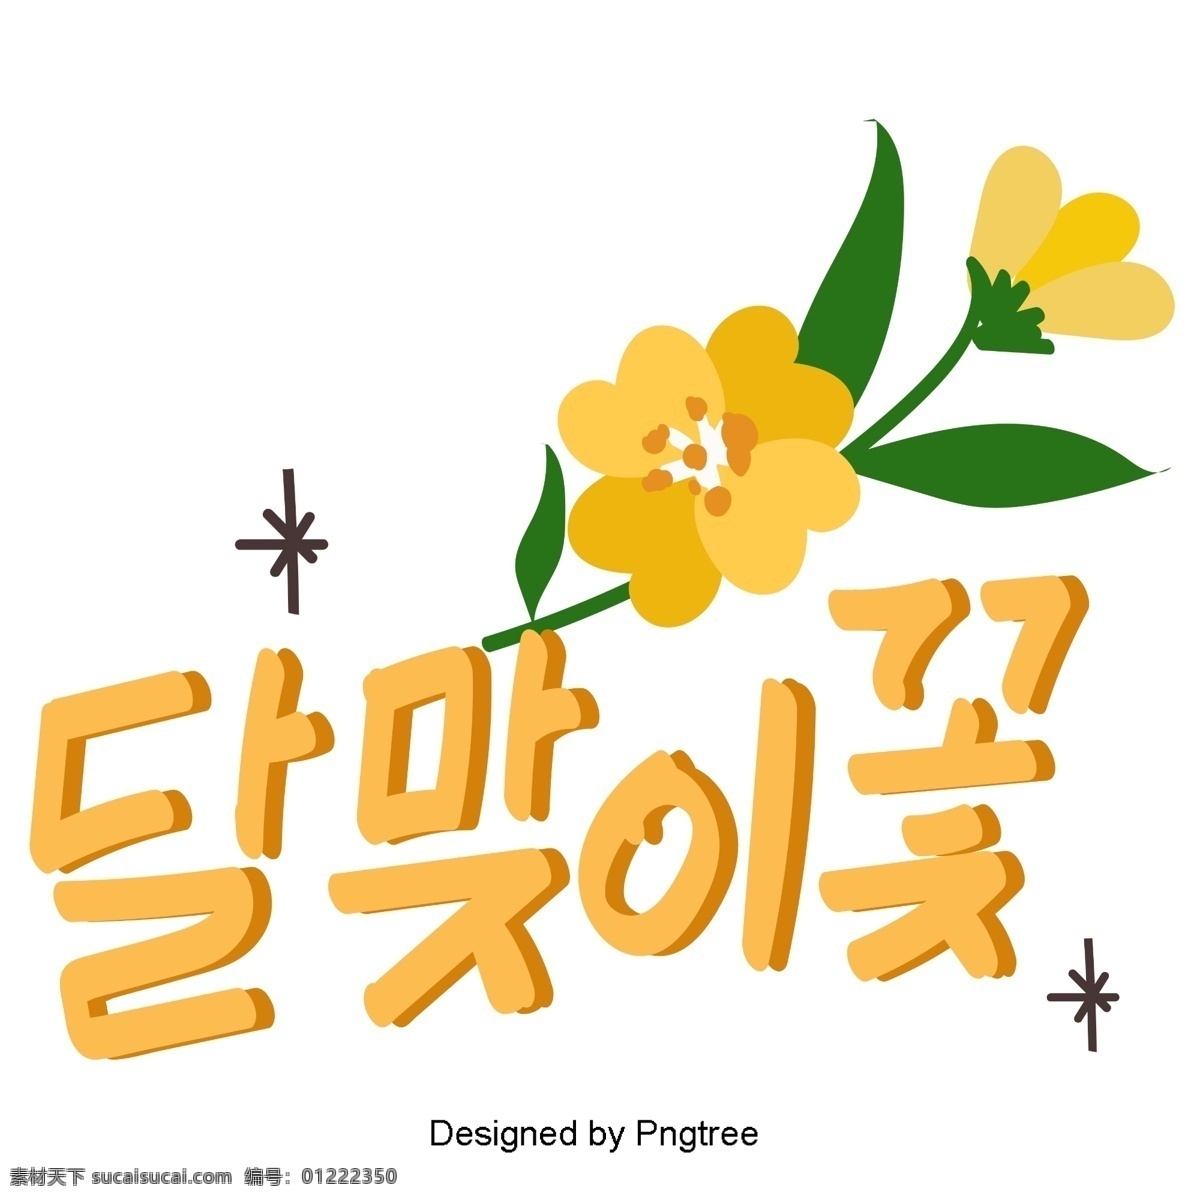 所以 月见草 植物 元素 最 严重 手 写作 报告 动画片 可爱 字形 手写 移动支付方式 韩文 greenbricks 花的 黄色